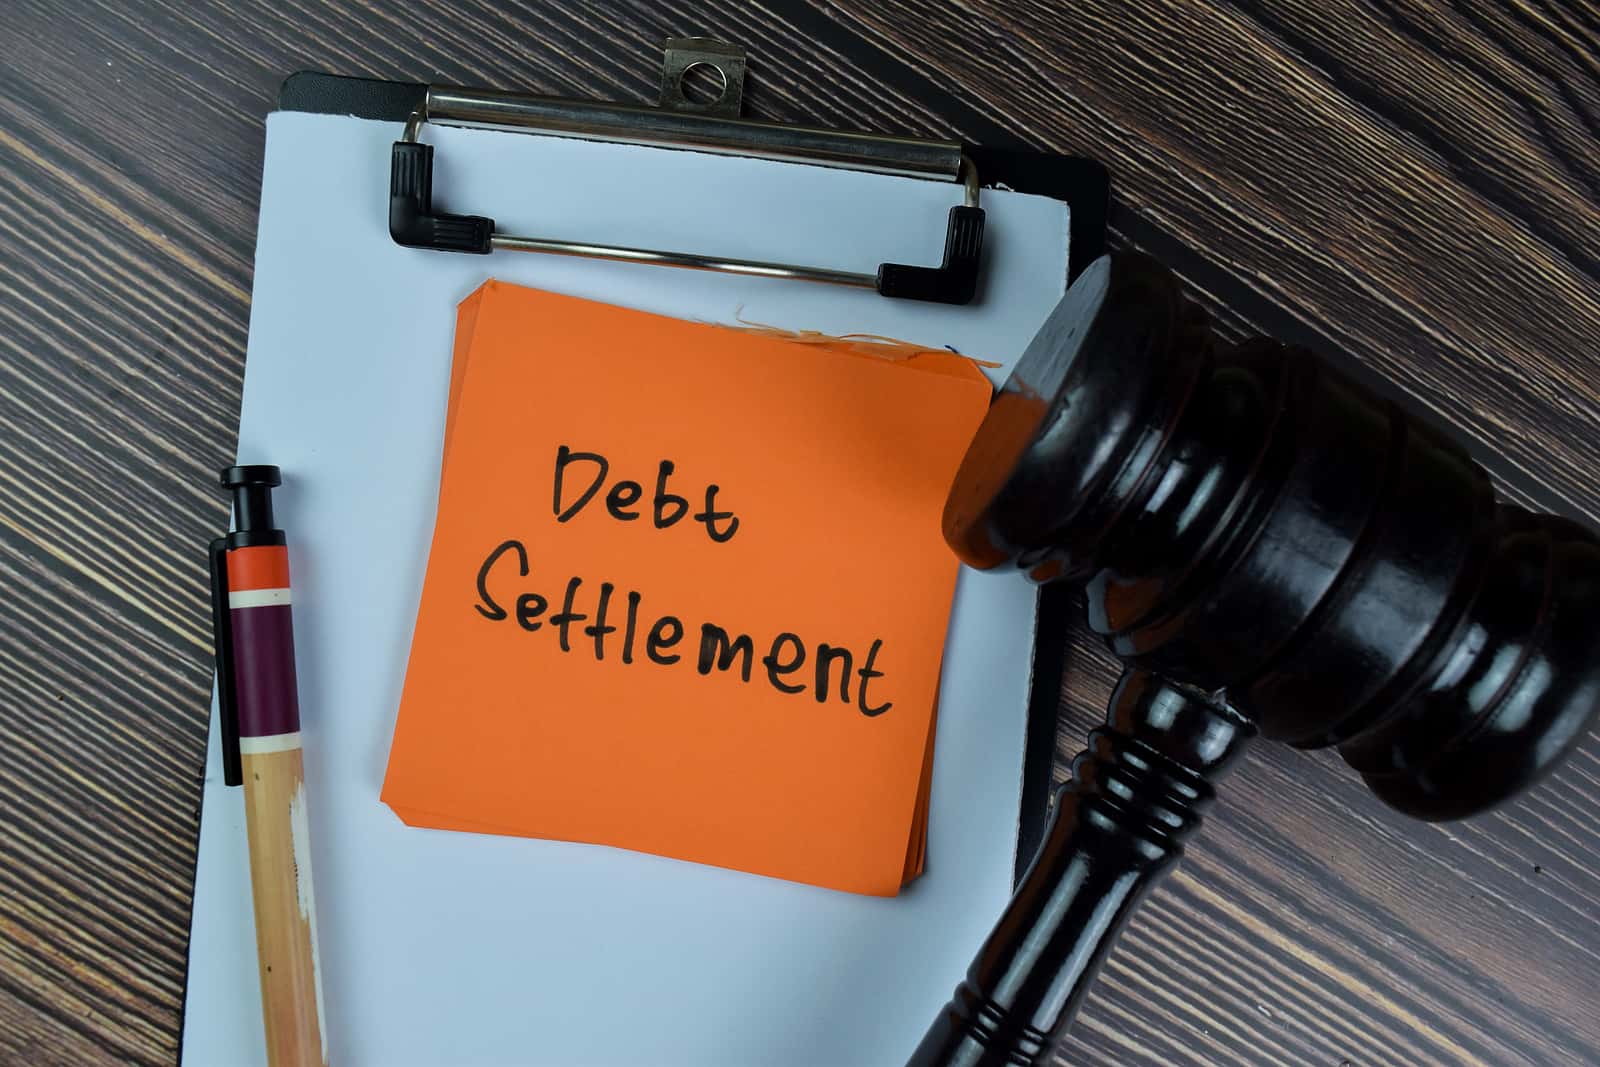 full and final debt settlement